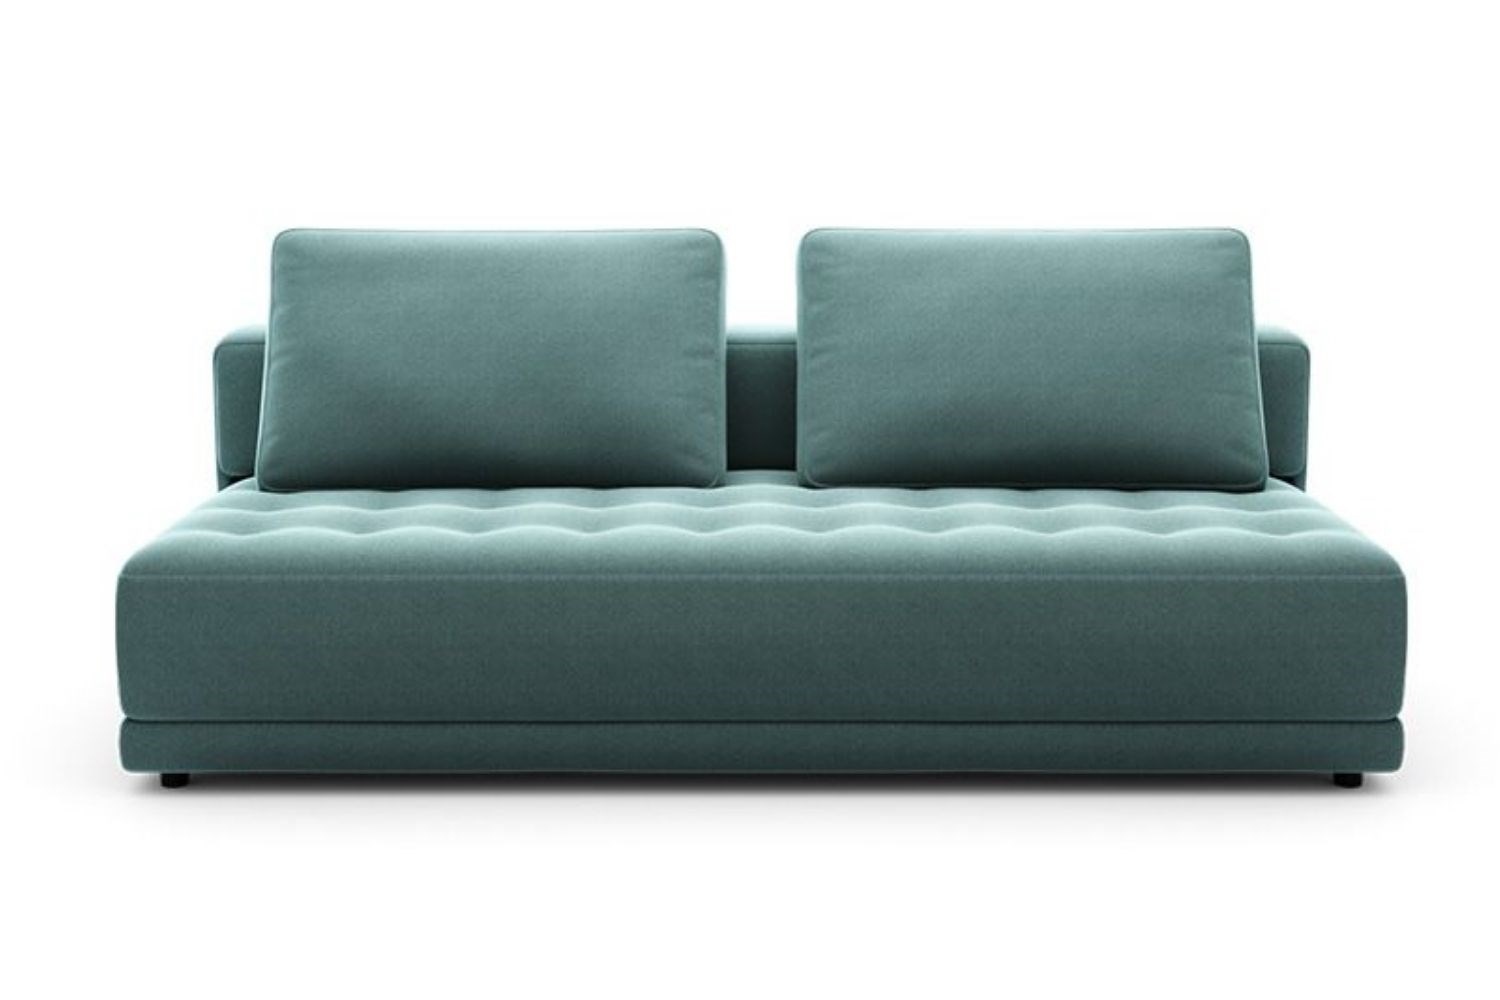 Sofa Bed5 ?width=720¢er=0.0,0.0